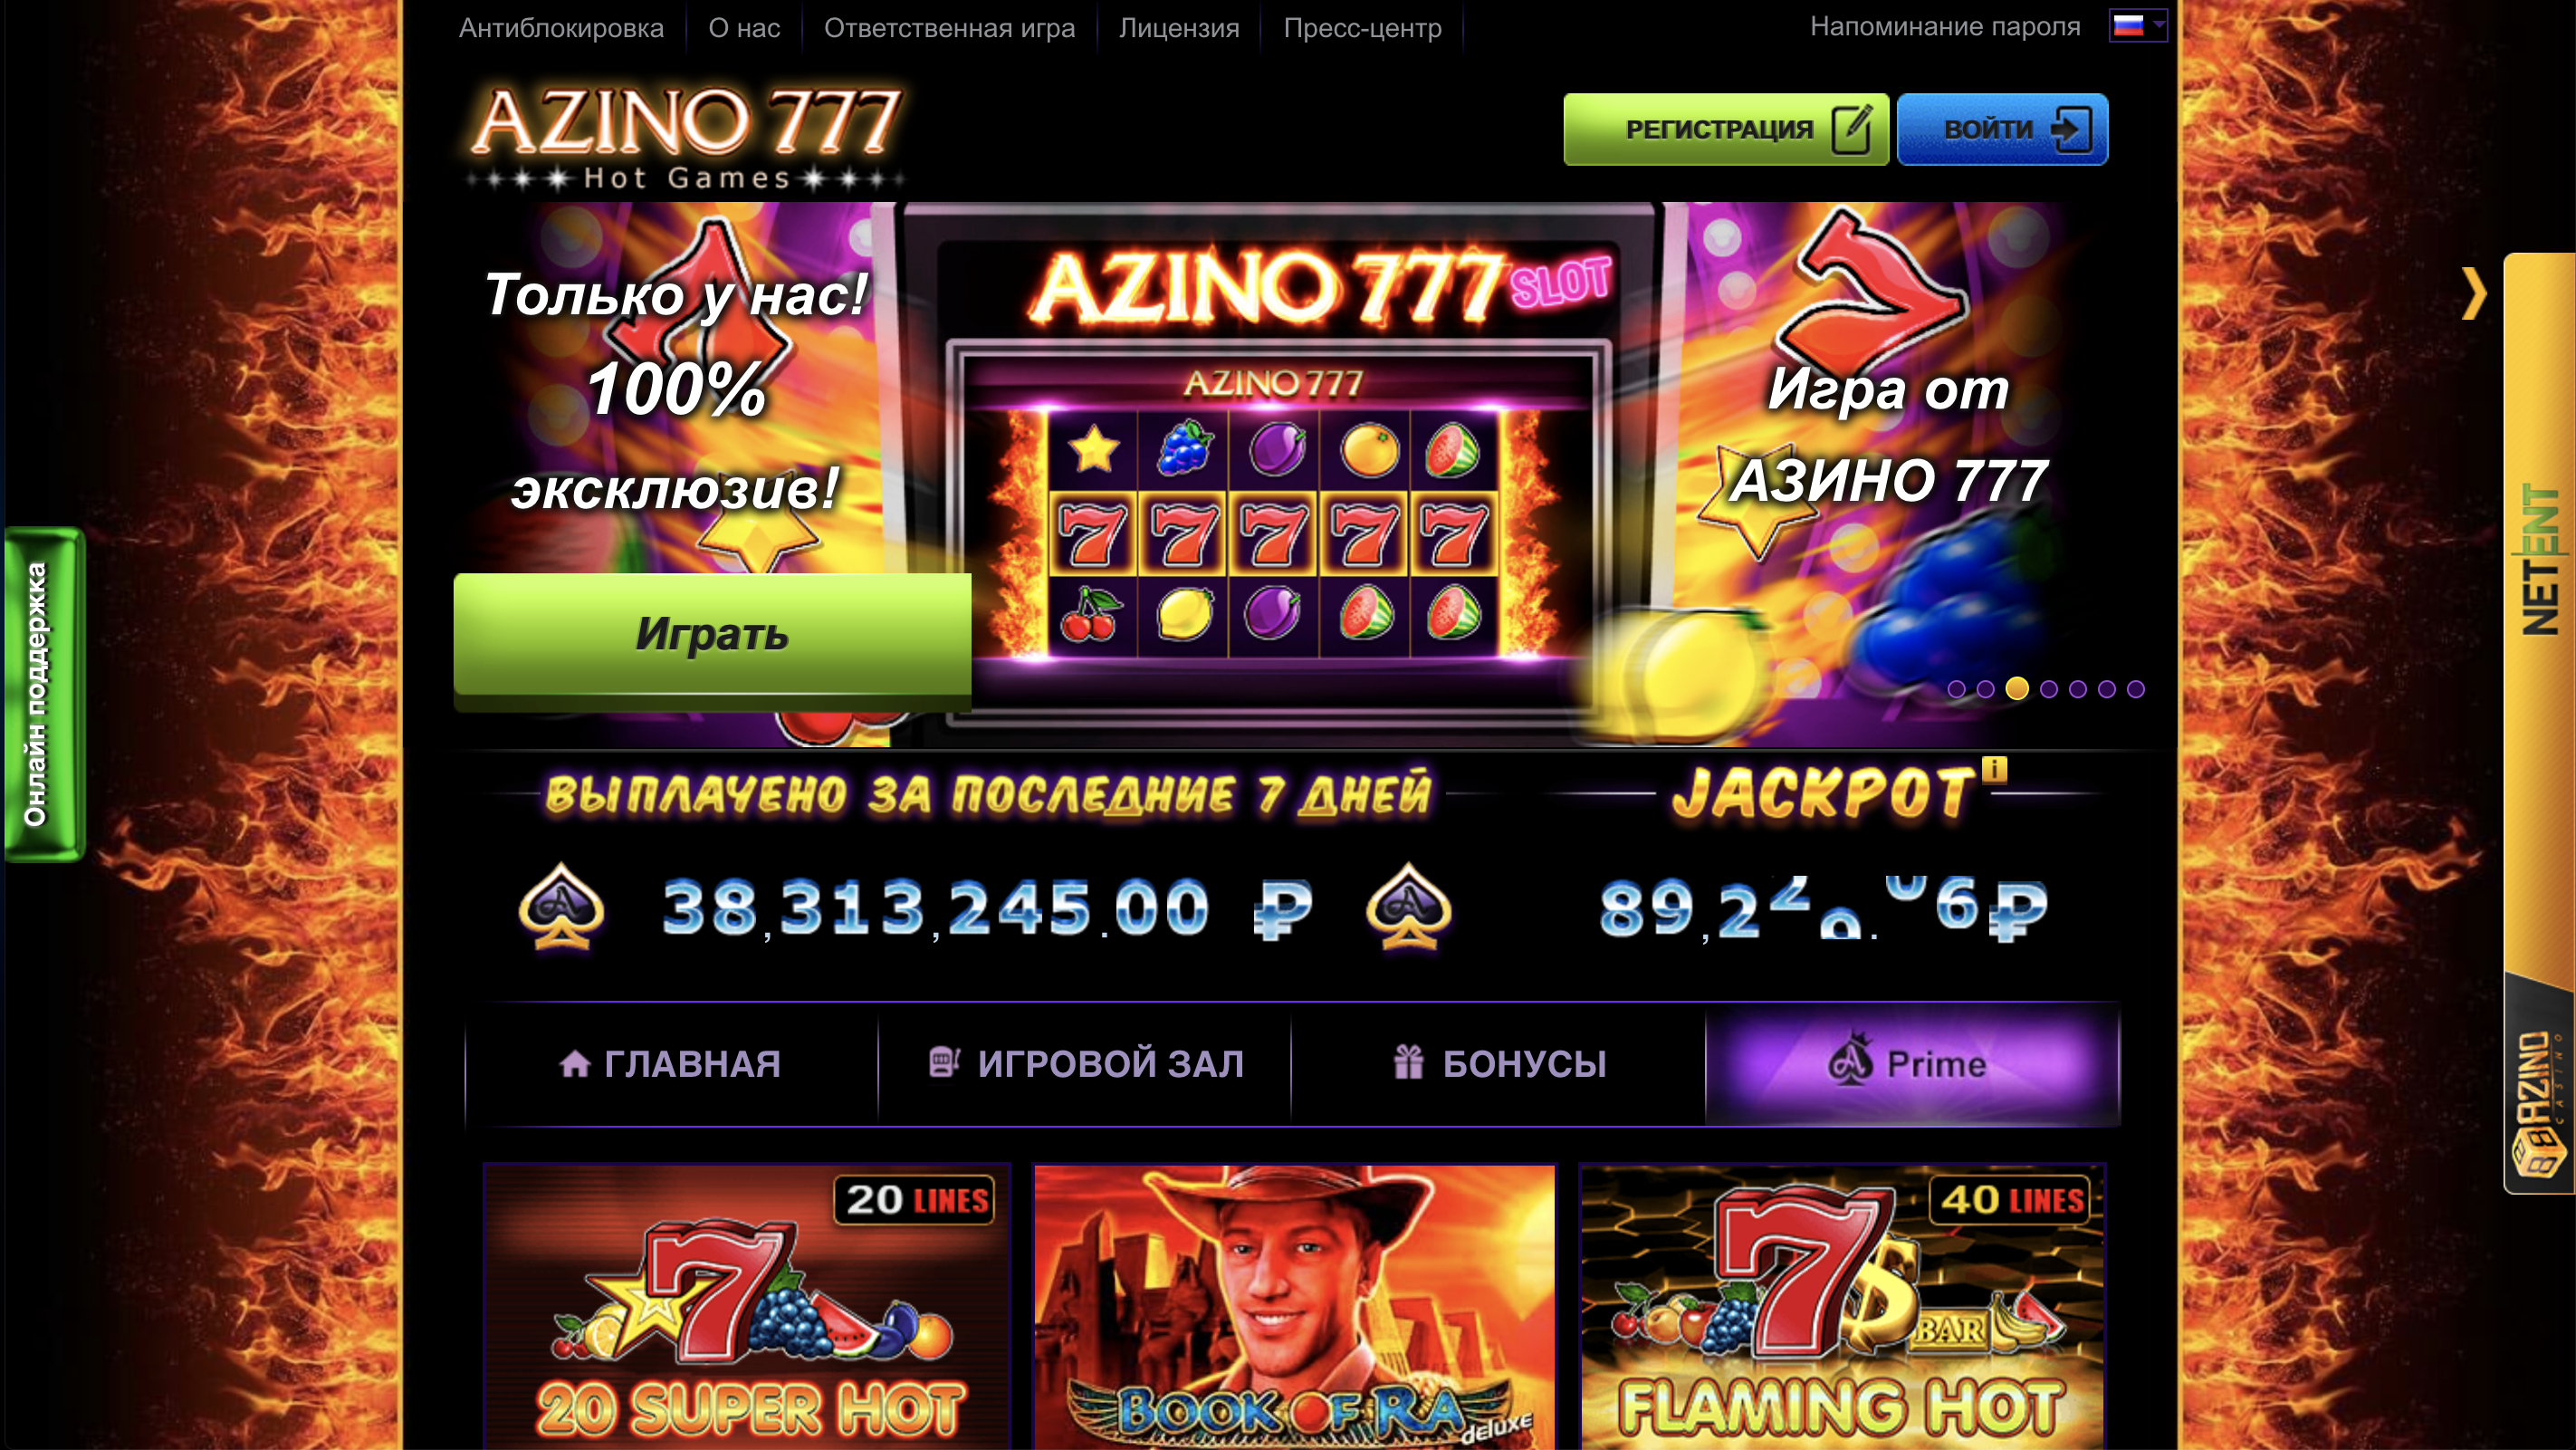 Casino azino777 com вулкан казино играть бесплатно без регистрации демо